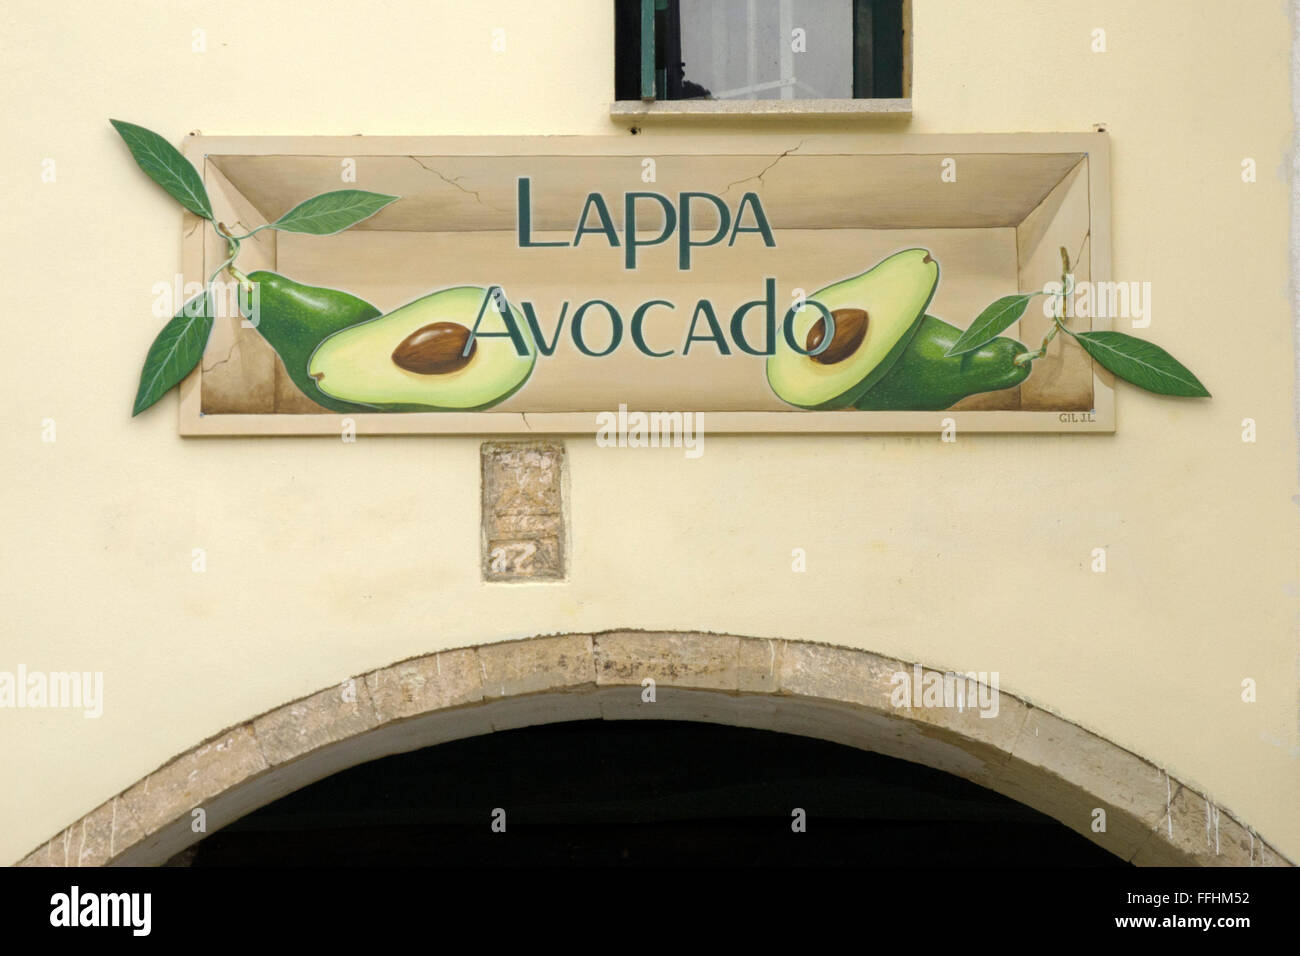 Griechenland, Kreta, Argiroupoli, Lappa Avocado verkauft Kosmetikprodukte aus Avocado die selbst angebaut werden. Stock Photo